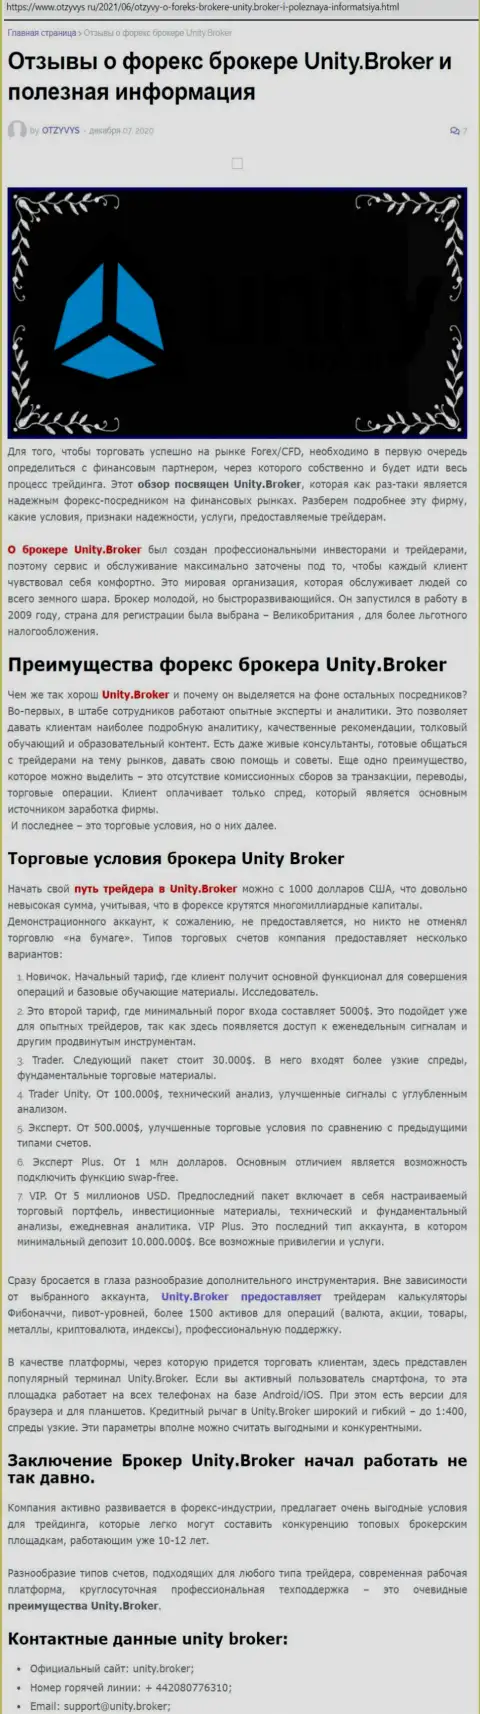 Публикация о FOREX-брокерской организации Юнити Брокер на веб-сервисе otzyvys ru